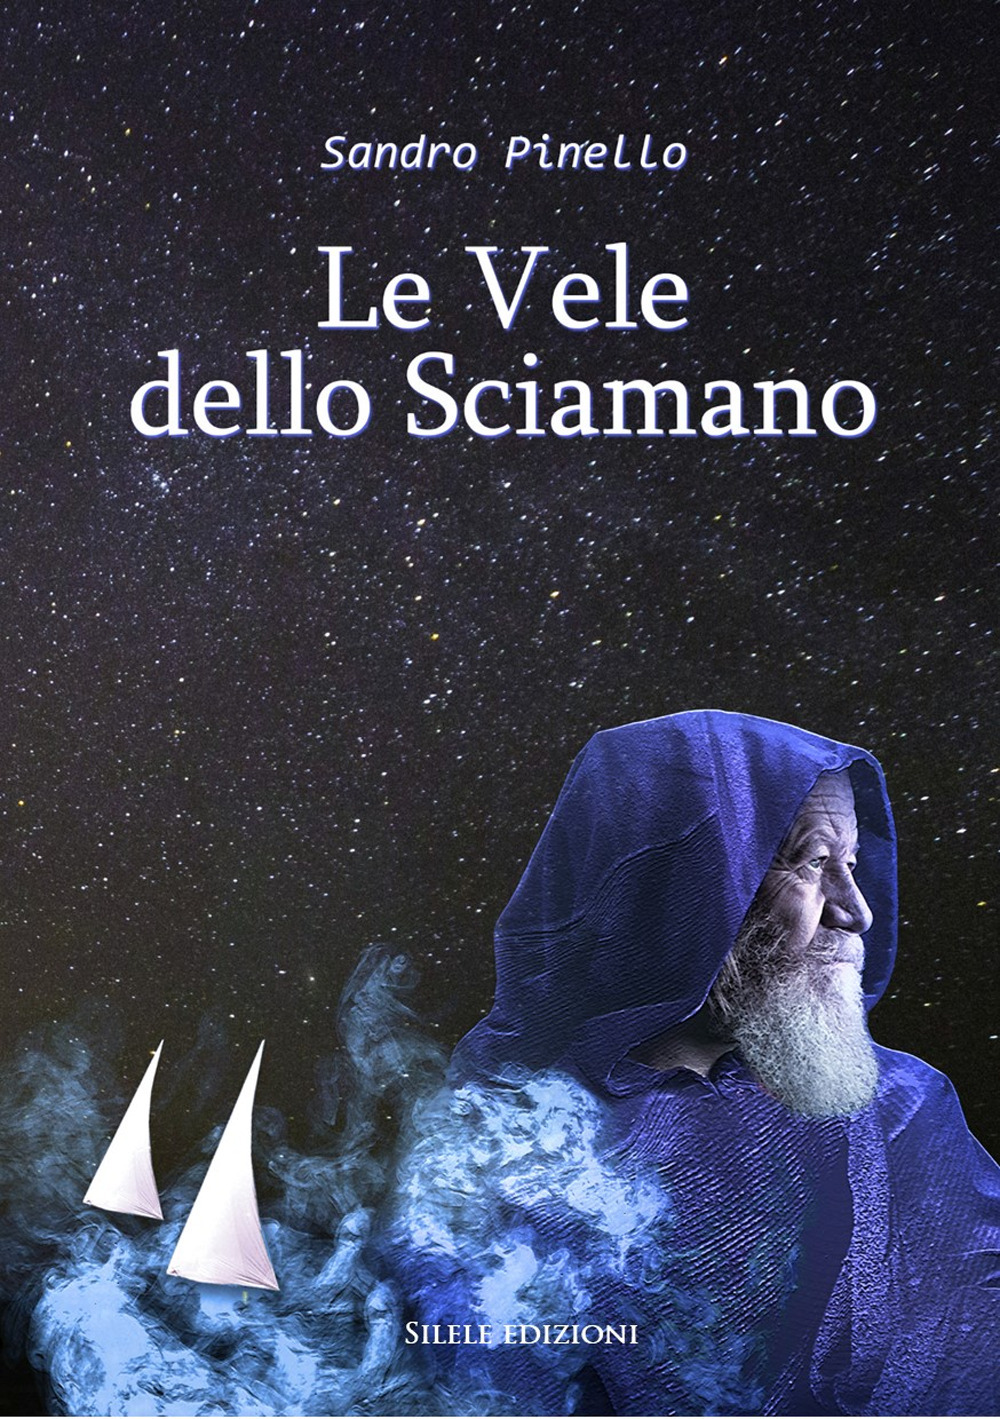 Libri Pinello Sandro - Le Vele Dello Sciamano NUOVO SIGILLATO, EDIZIONE DEL 16/09/2020 SUBITO DISPONIBILE